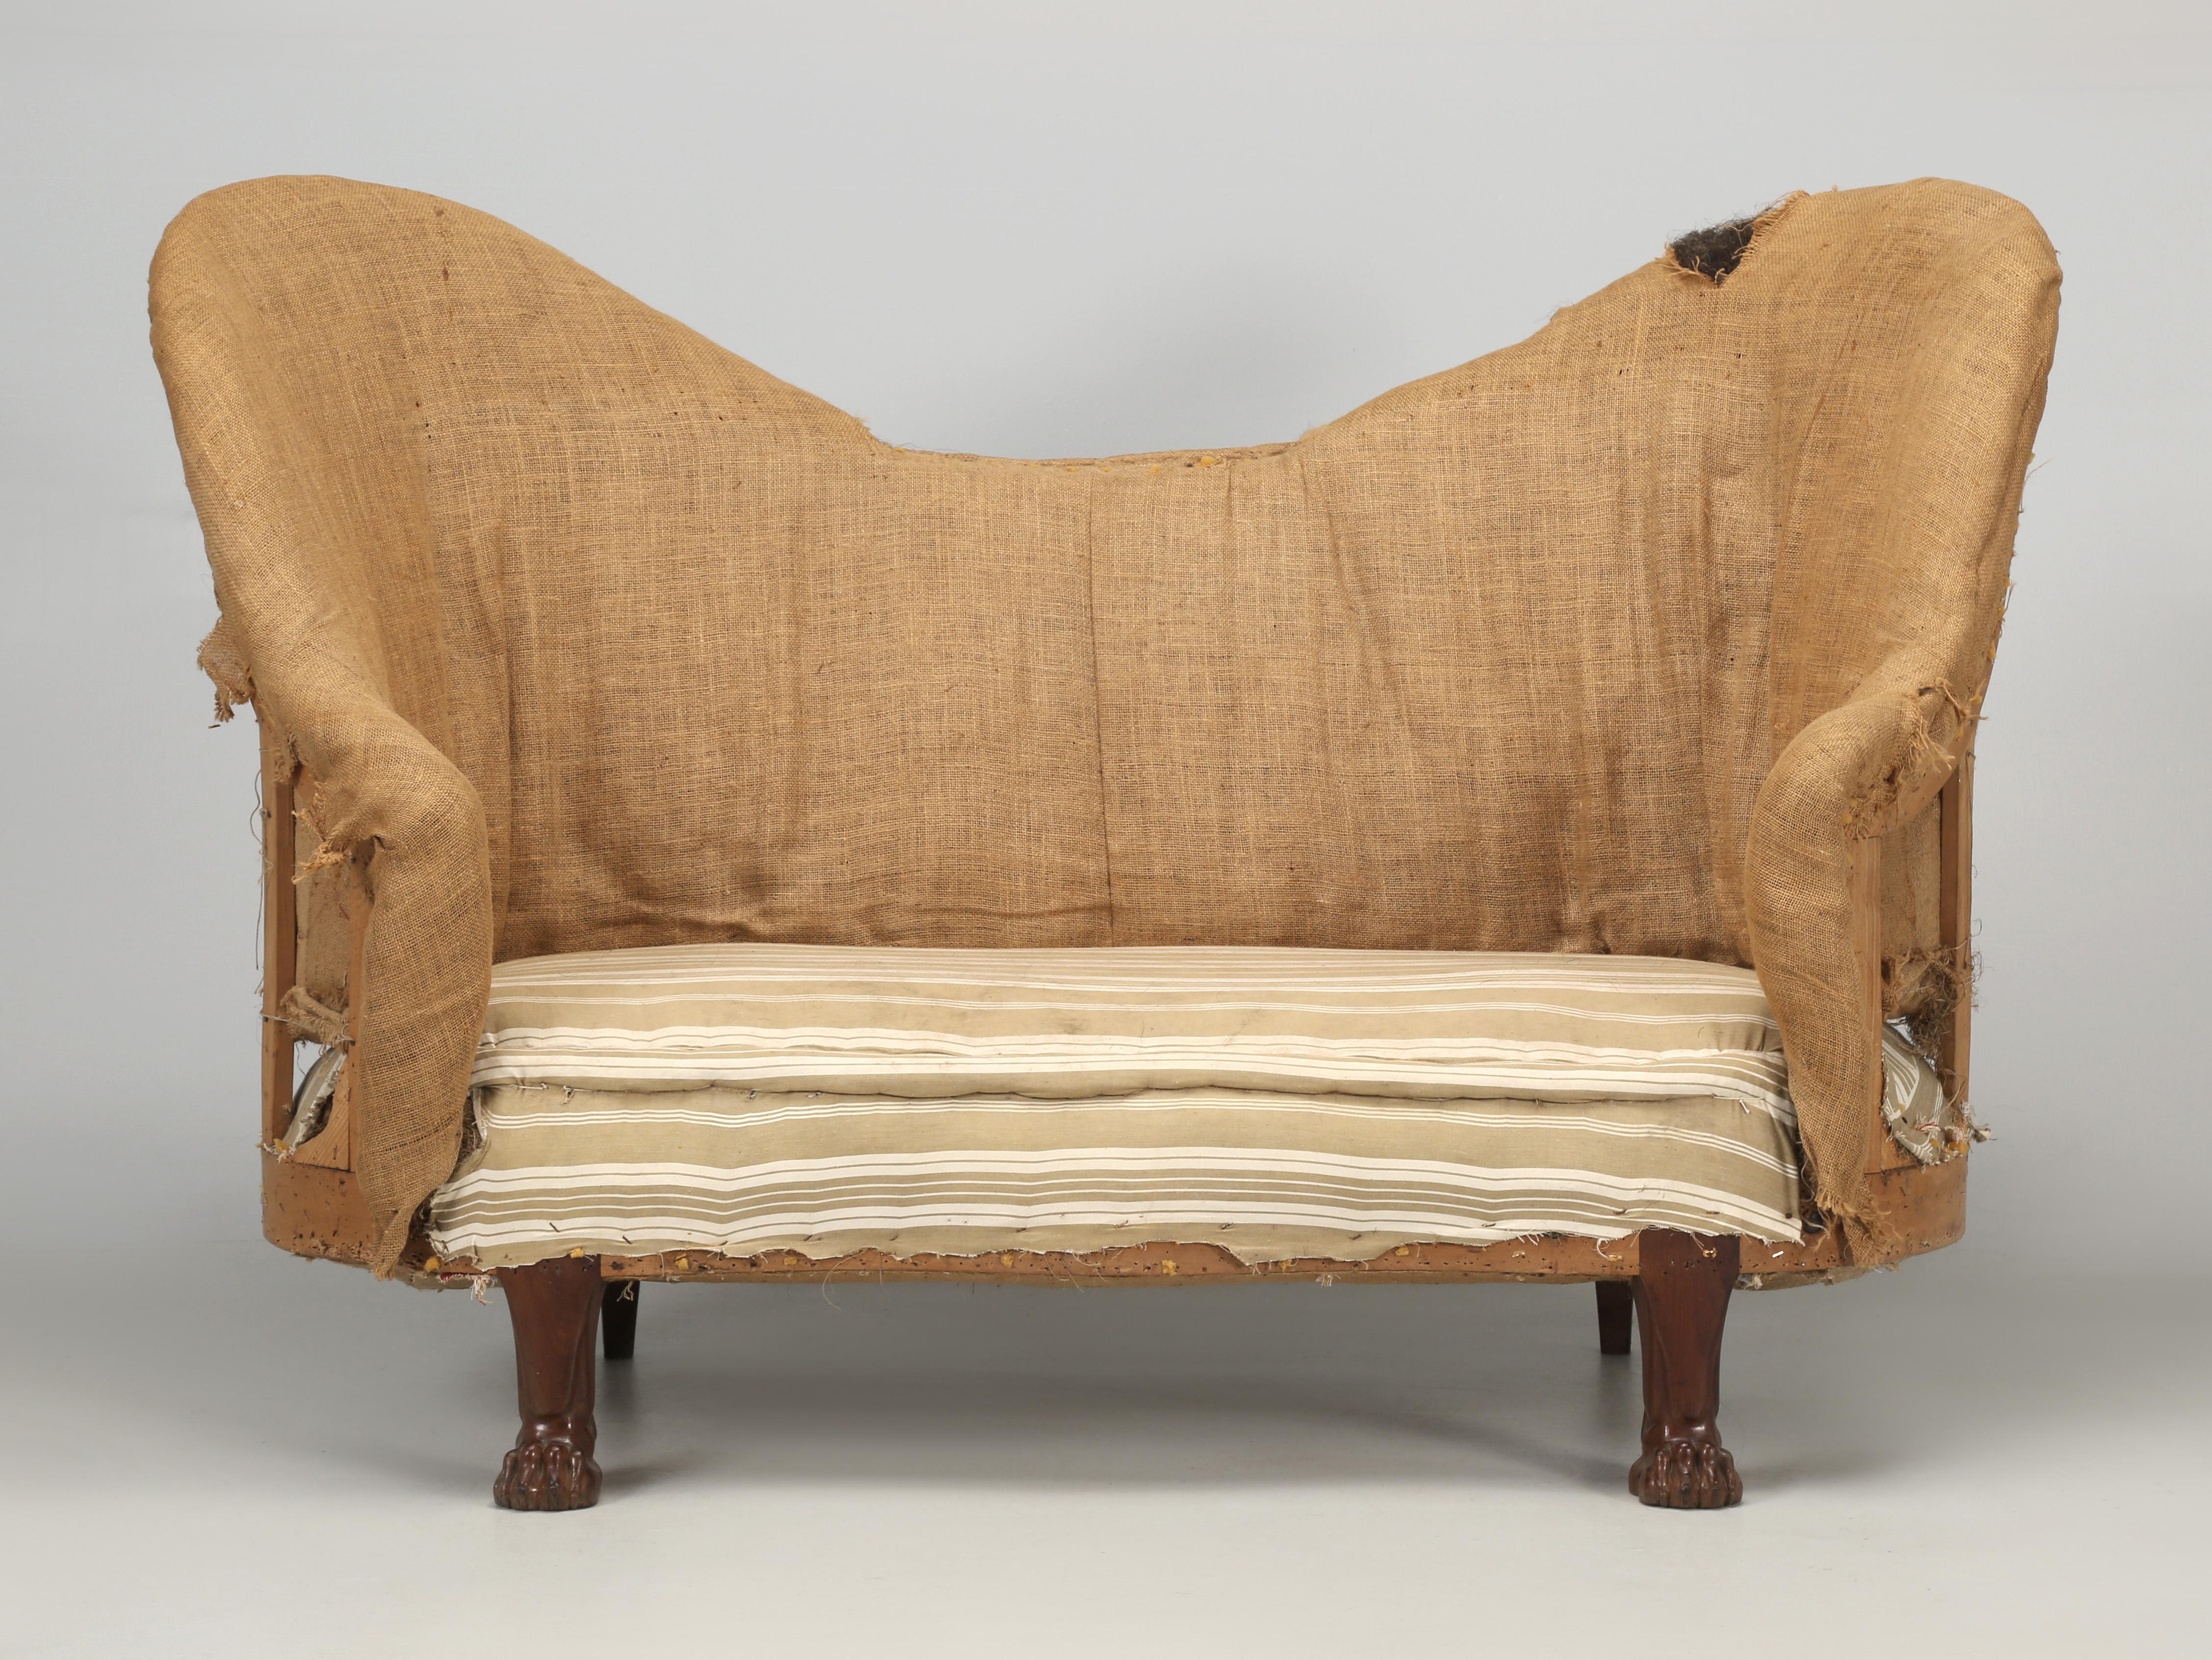 Antikes französisches Sofa oder Liegesofa, dekonstruiert und wahrscheinlich Ende 1800 hergestellt. Wenn Sie sich die Löwentatzenfüße genau ansehen, werden Sie zwei Dinge bemerken: Das Holz ist ein sehr hochwertiges Mahagoni und die Schnitzqualität